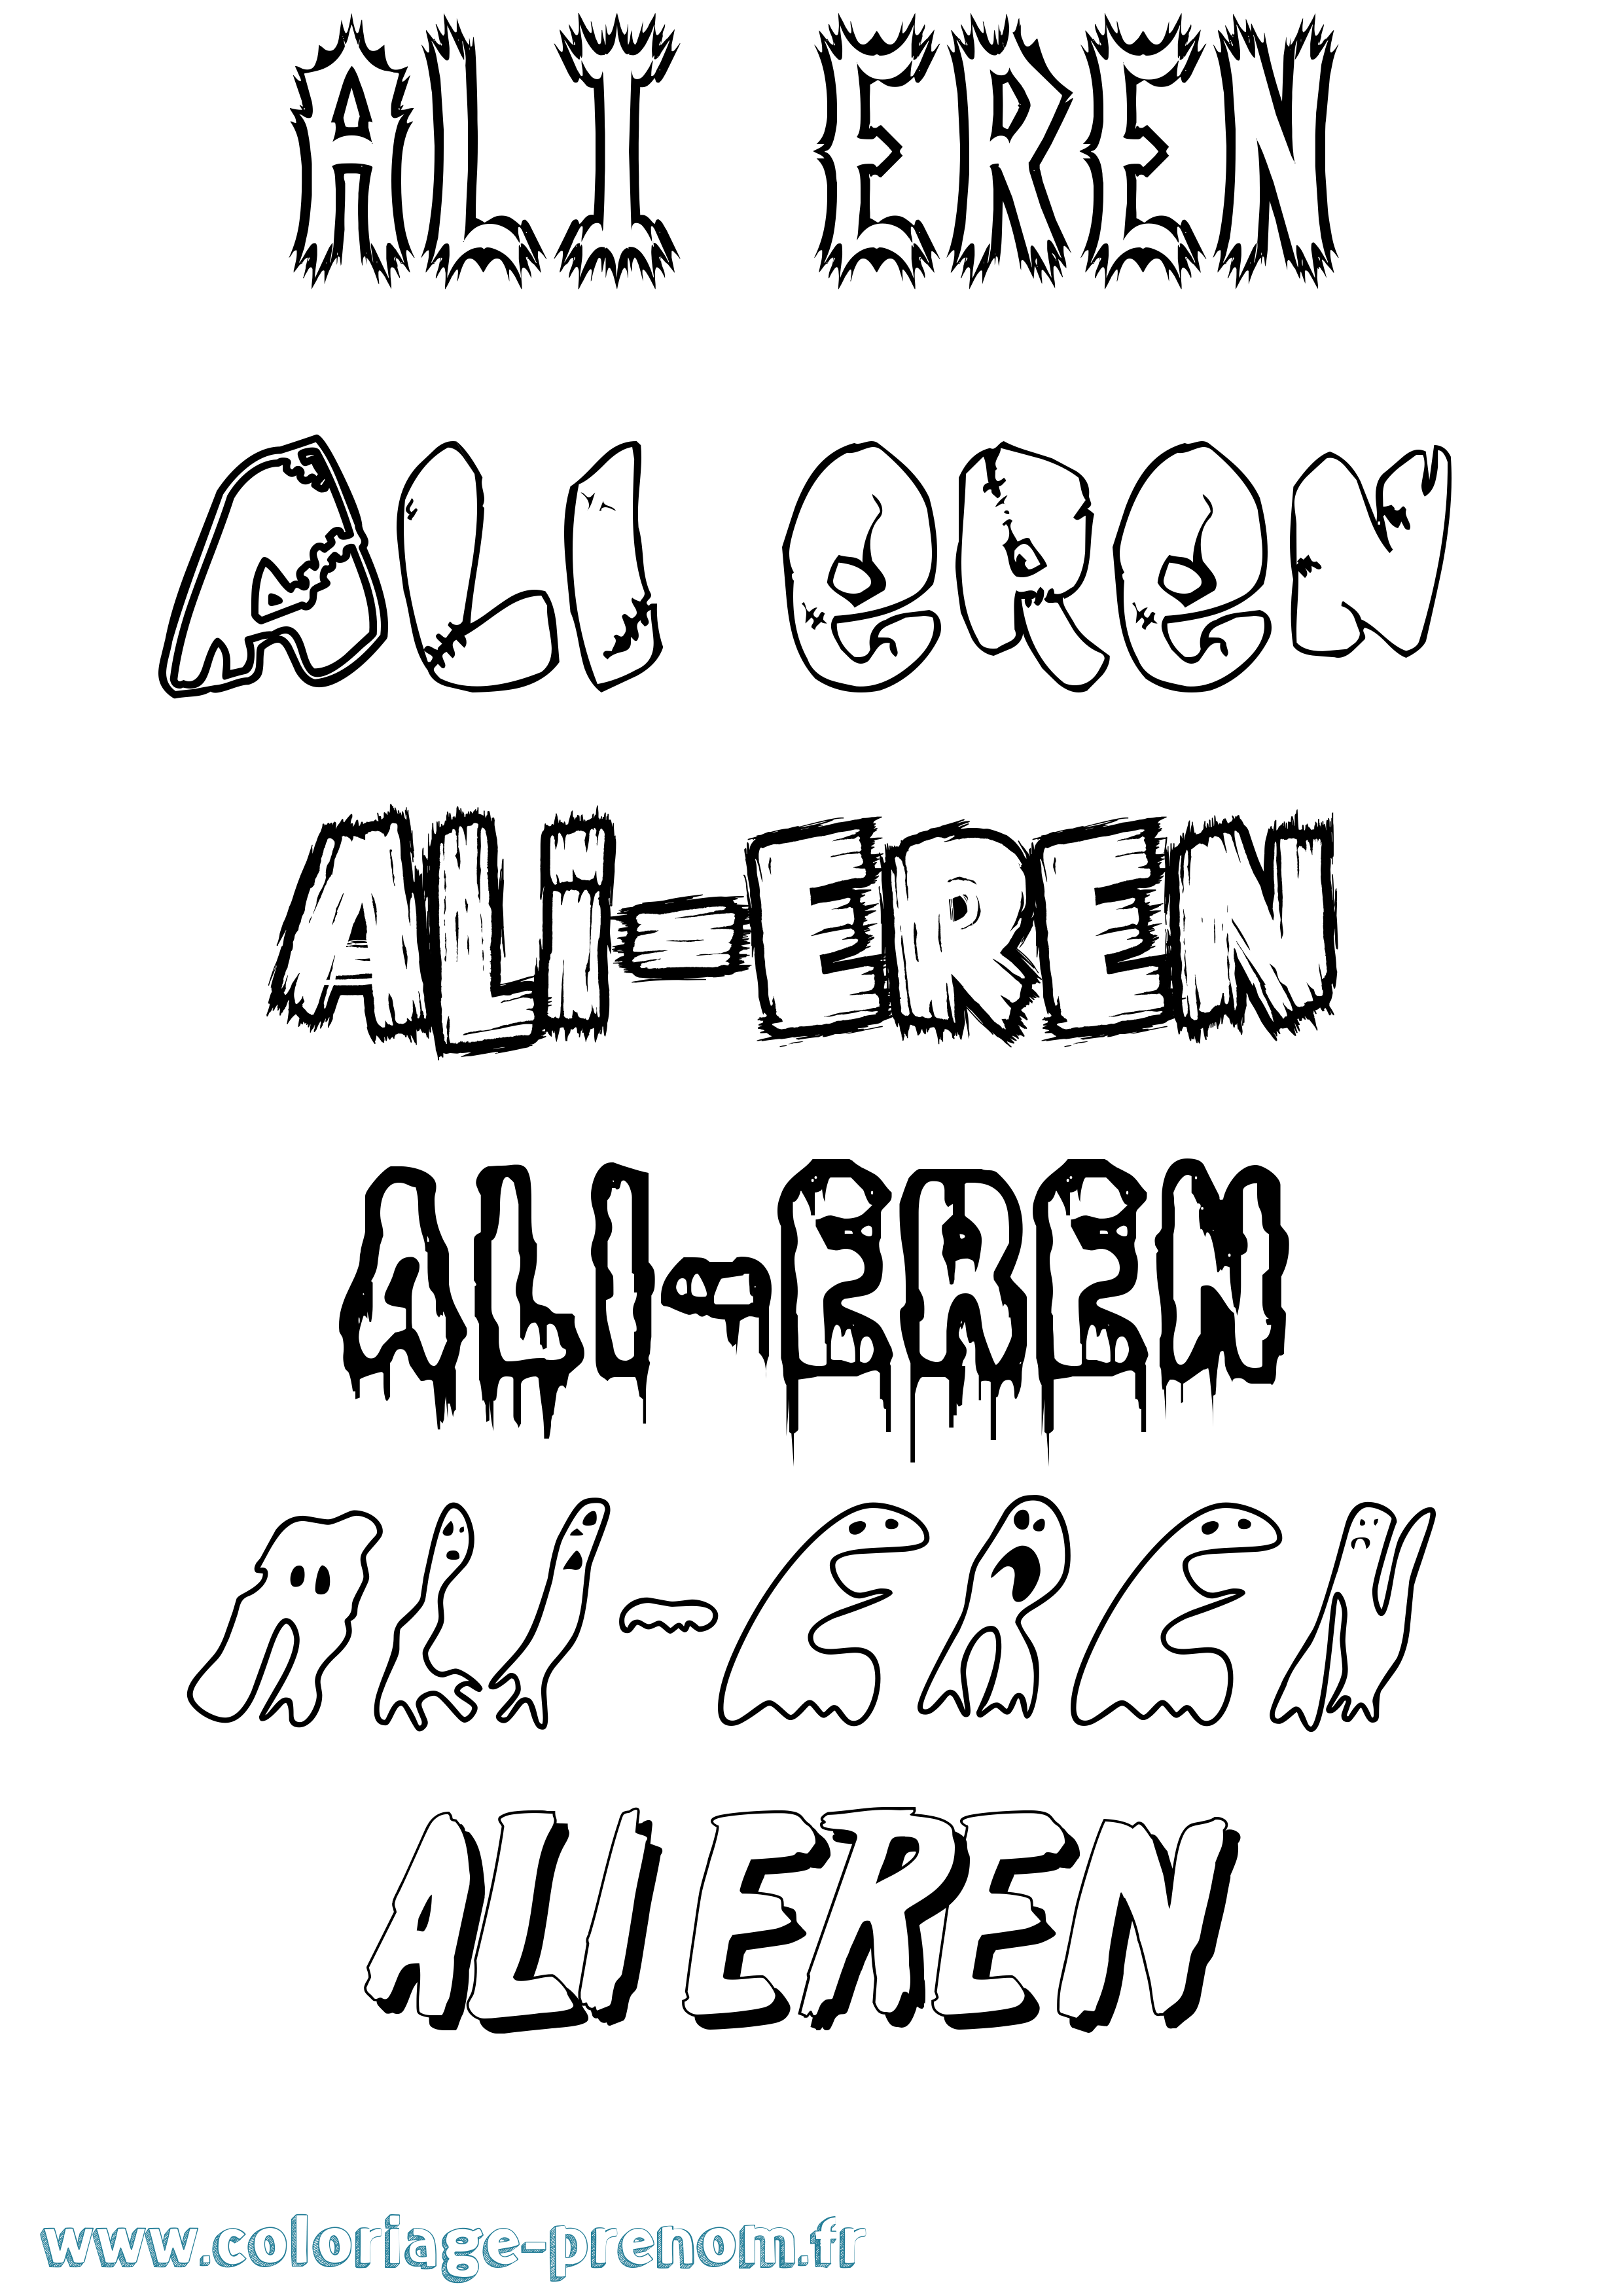 Coloriage prénom Ali-Eren Frisson